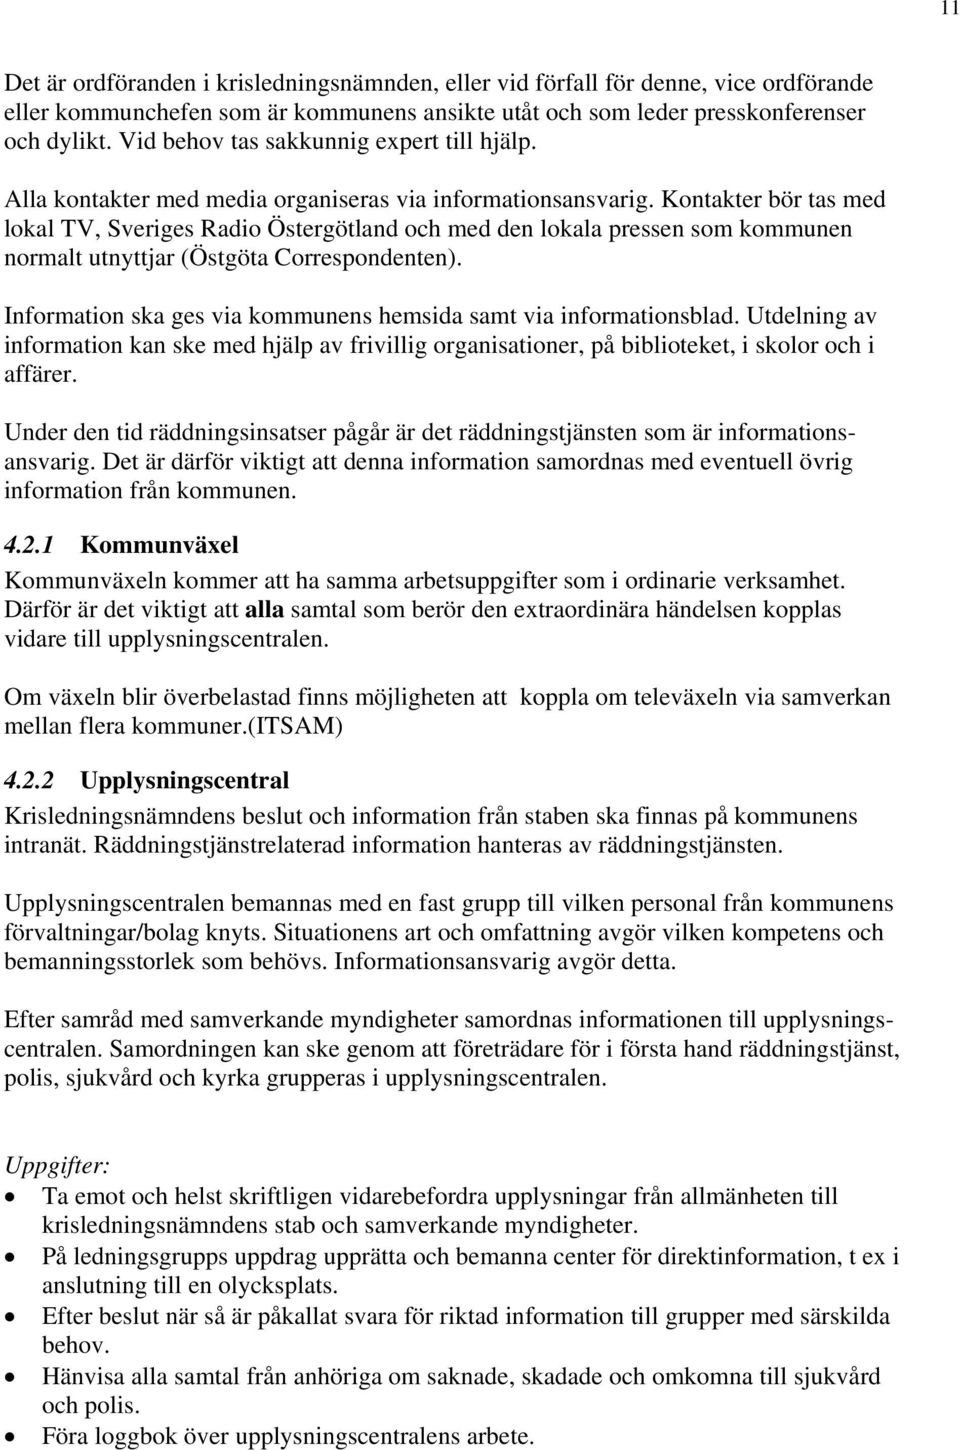 Kontakter bör tas med lokal TV, Sveriges Radio Östergötland och med den lokala pressen som kommunen normalt utnyttjar (Östgöta Correspondenten).